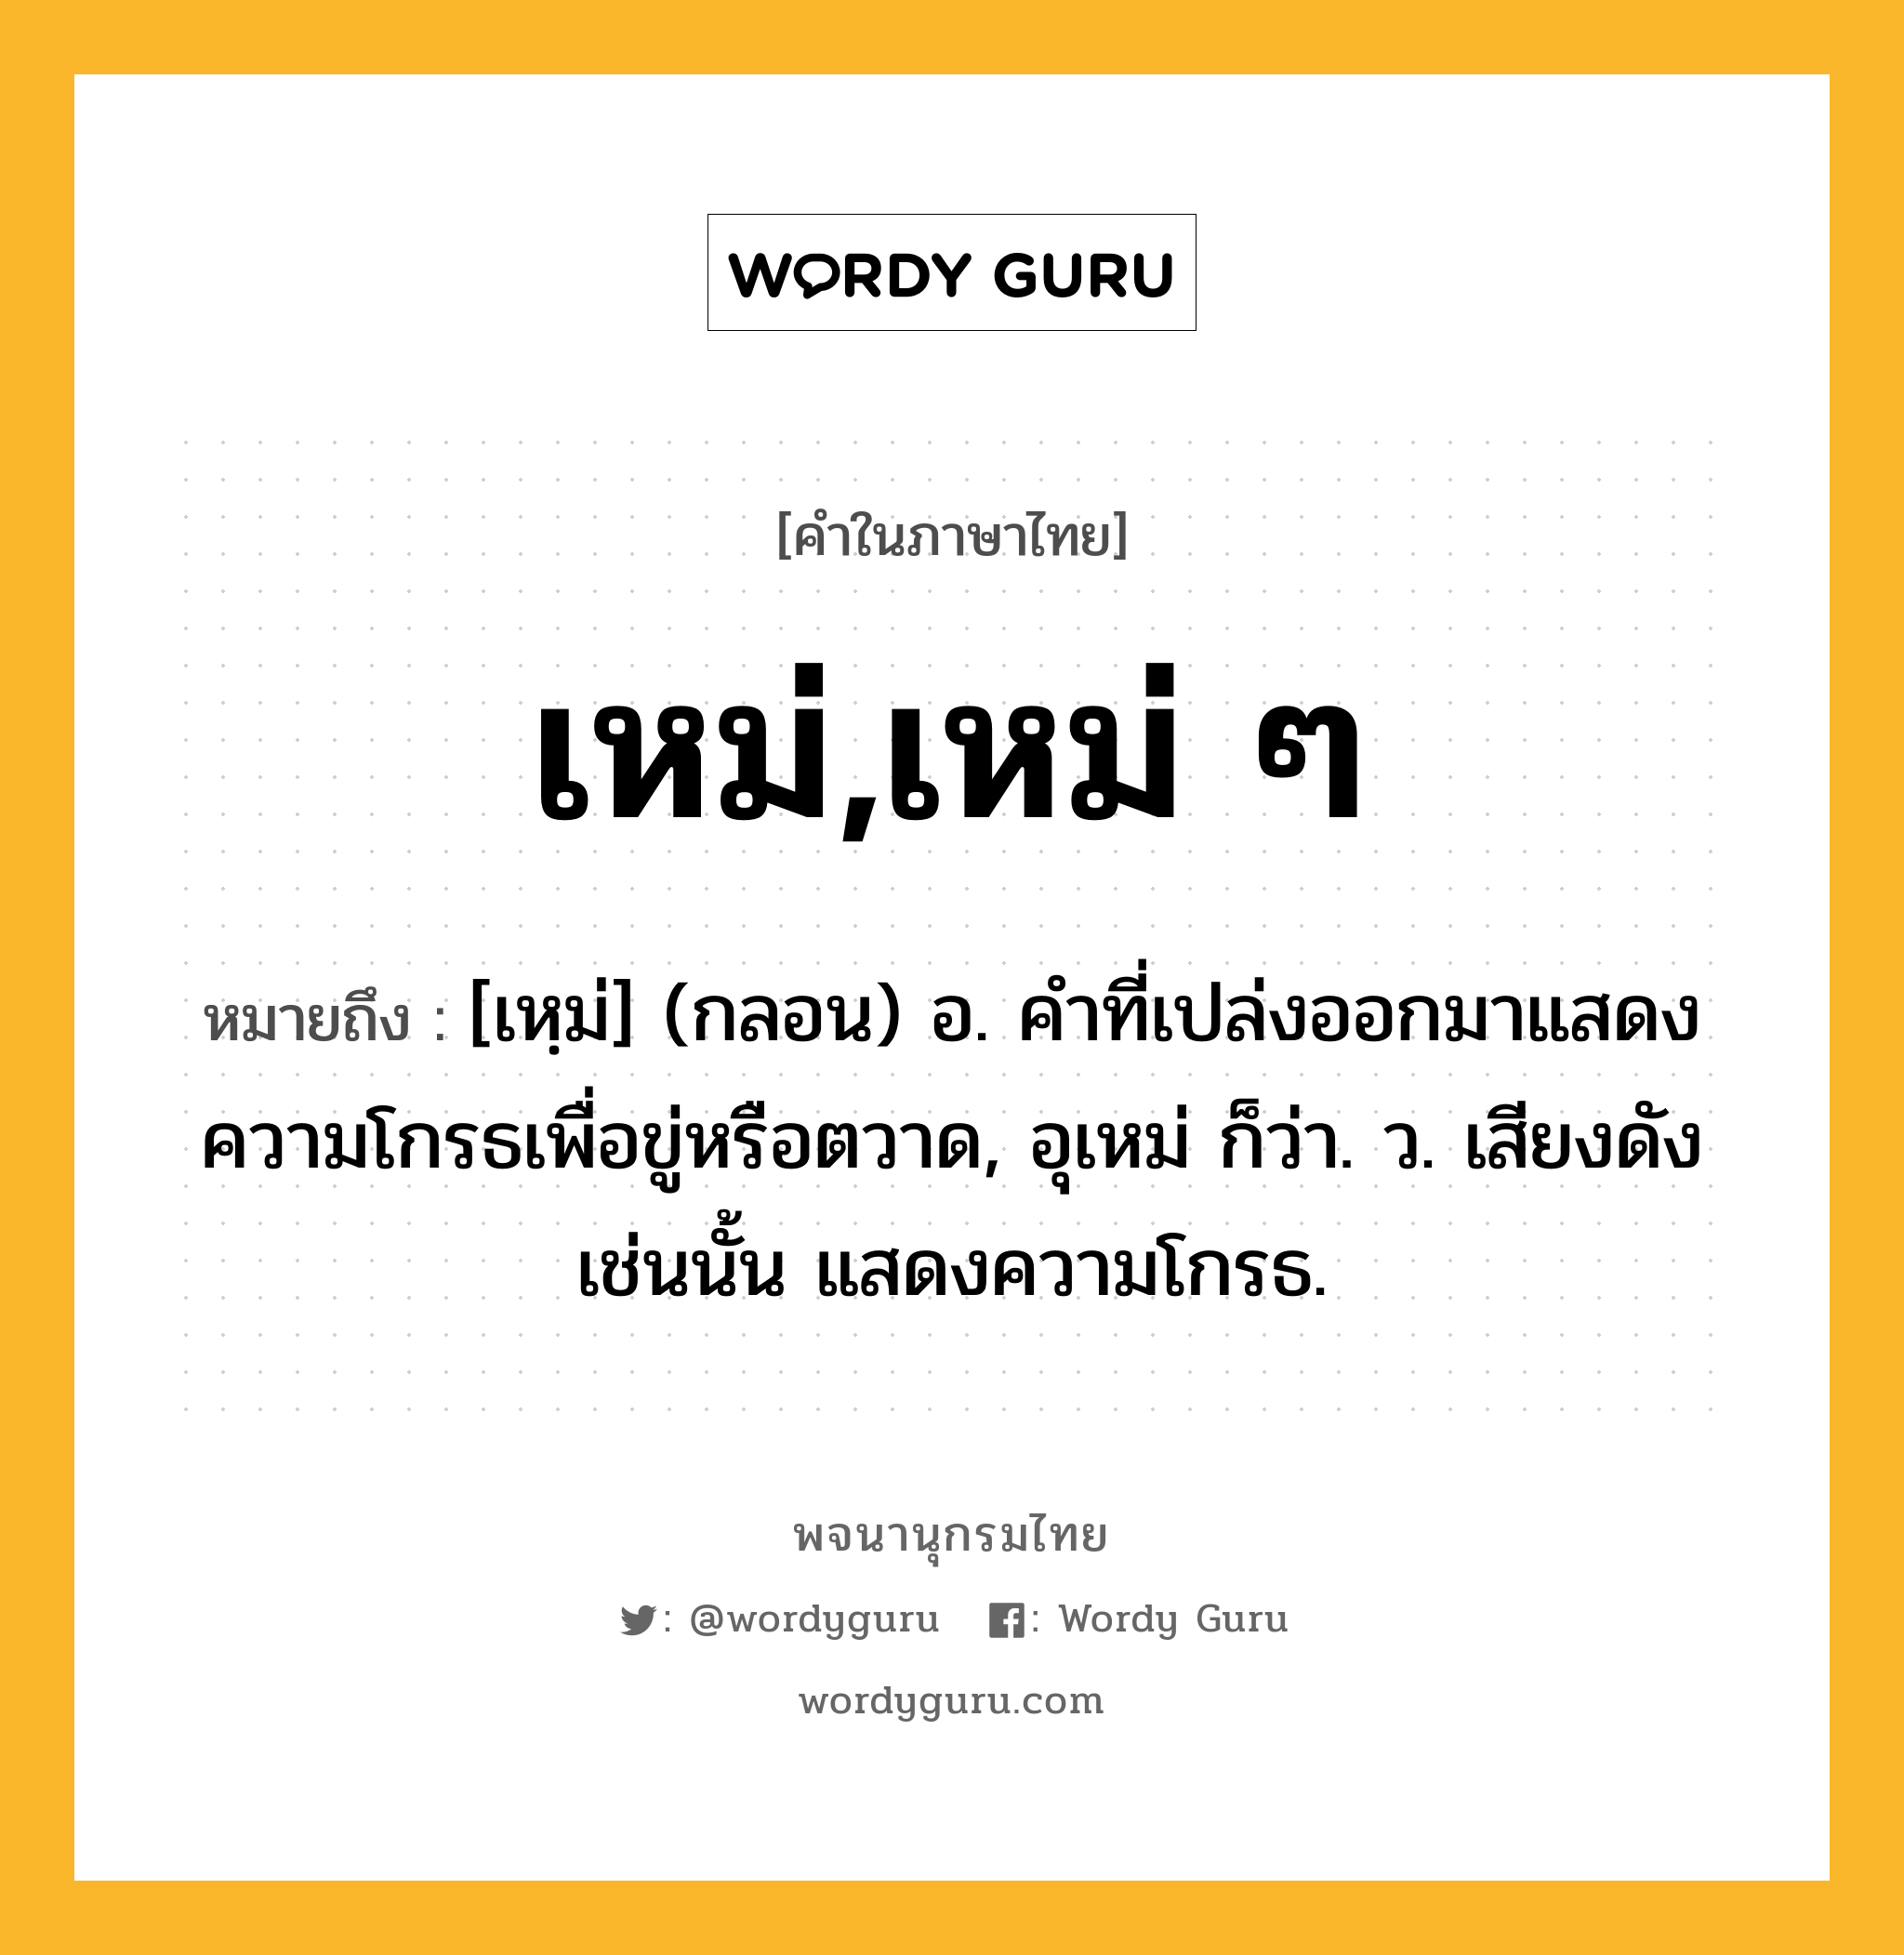 เหม่,เหม่ ๆ ความหมาย หมายถึงอะไร?, คำในภาษาไทย เหม่,เหม่ ๆ หมายถึง [เหฺม่] (กลอน) อ. คําที่เปล่งออกมาแสดงความโกรธเพื่อขู่หรือตวาด, อุเหม่ ก็ว่า. ว. เสียงดังเช่นนั้น แสดงความโกรธ.